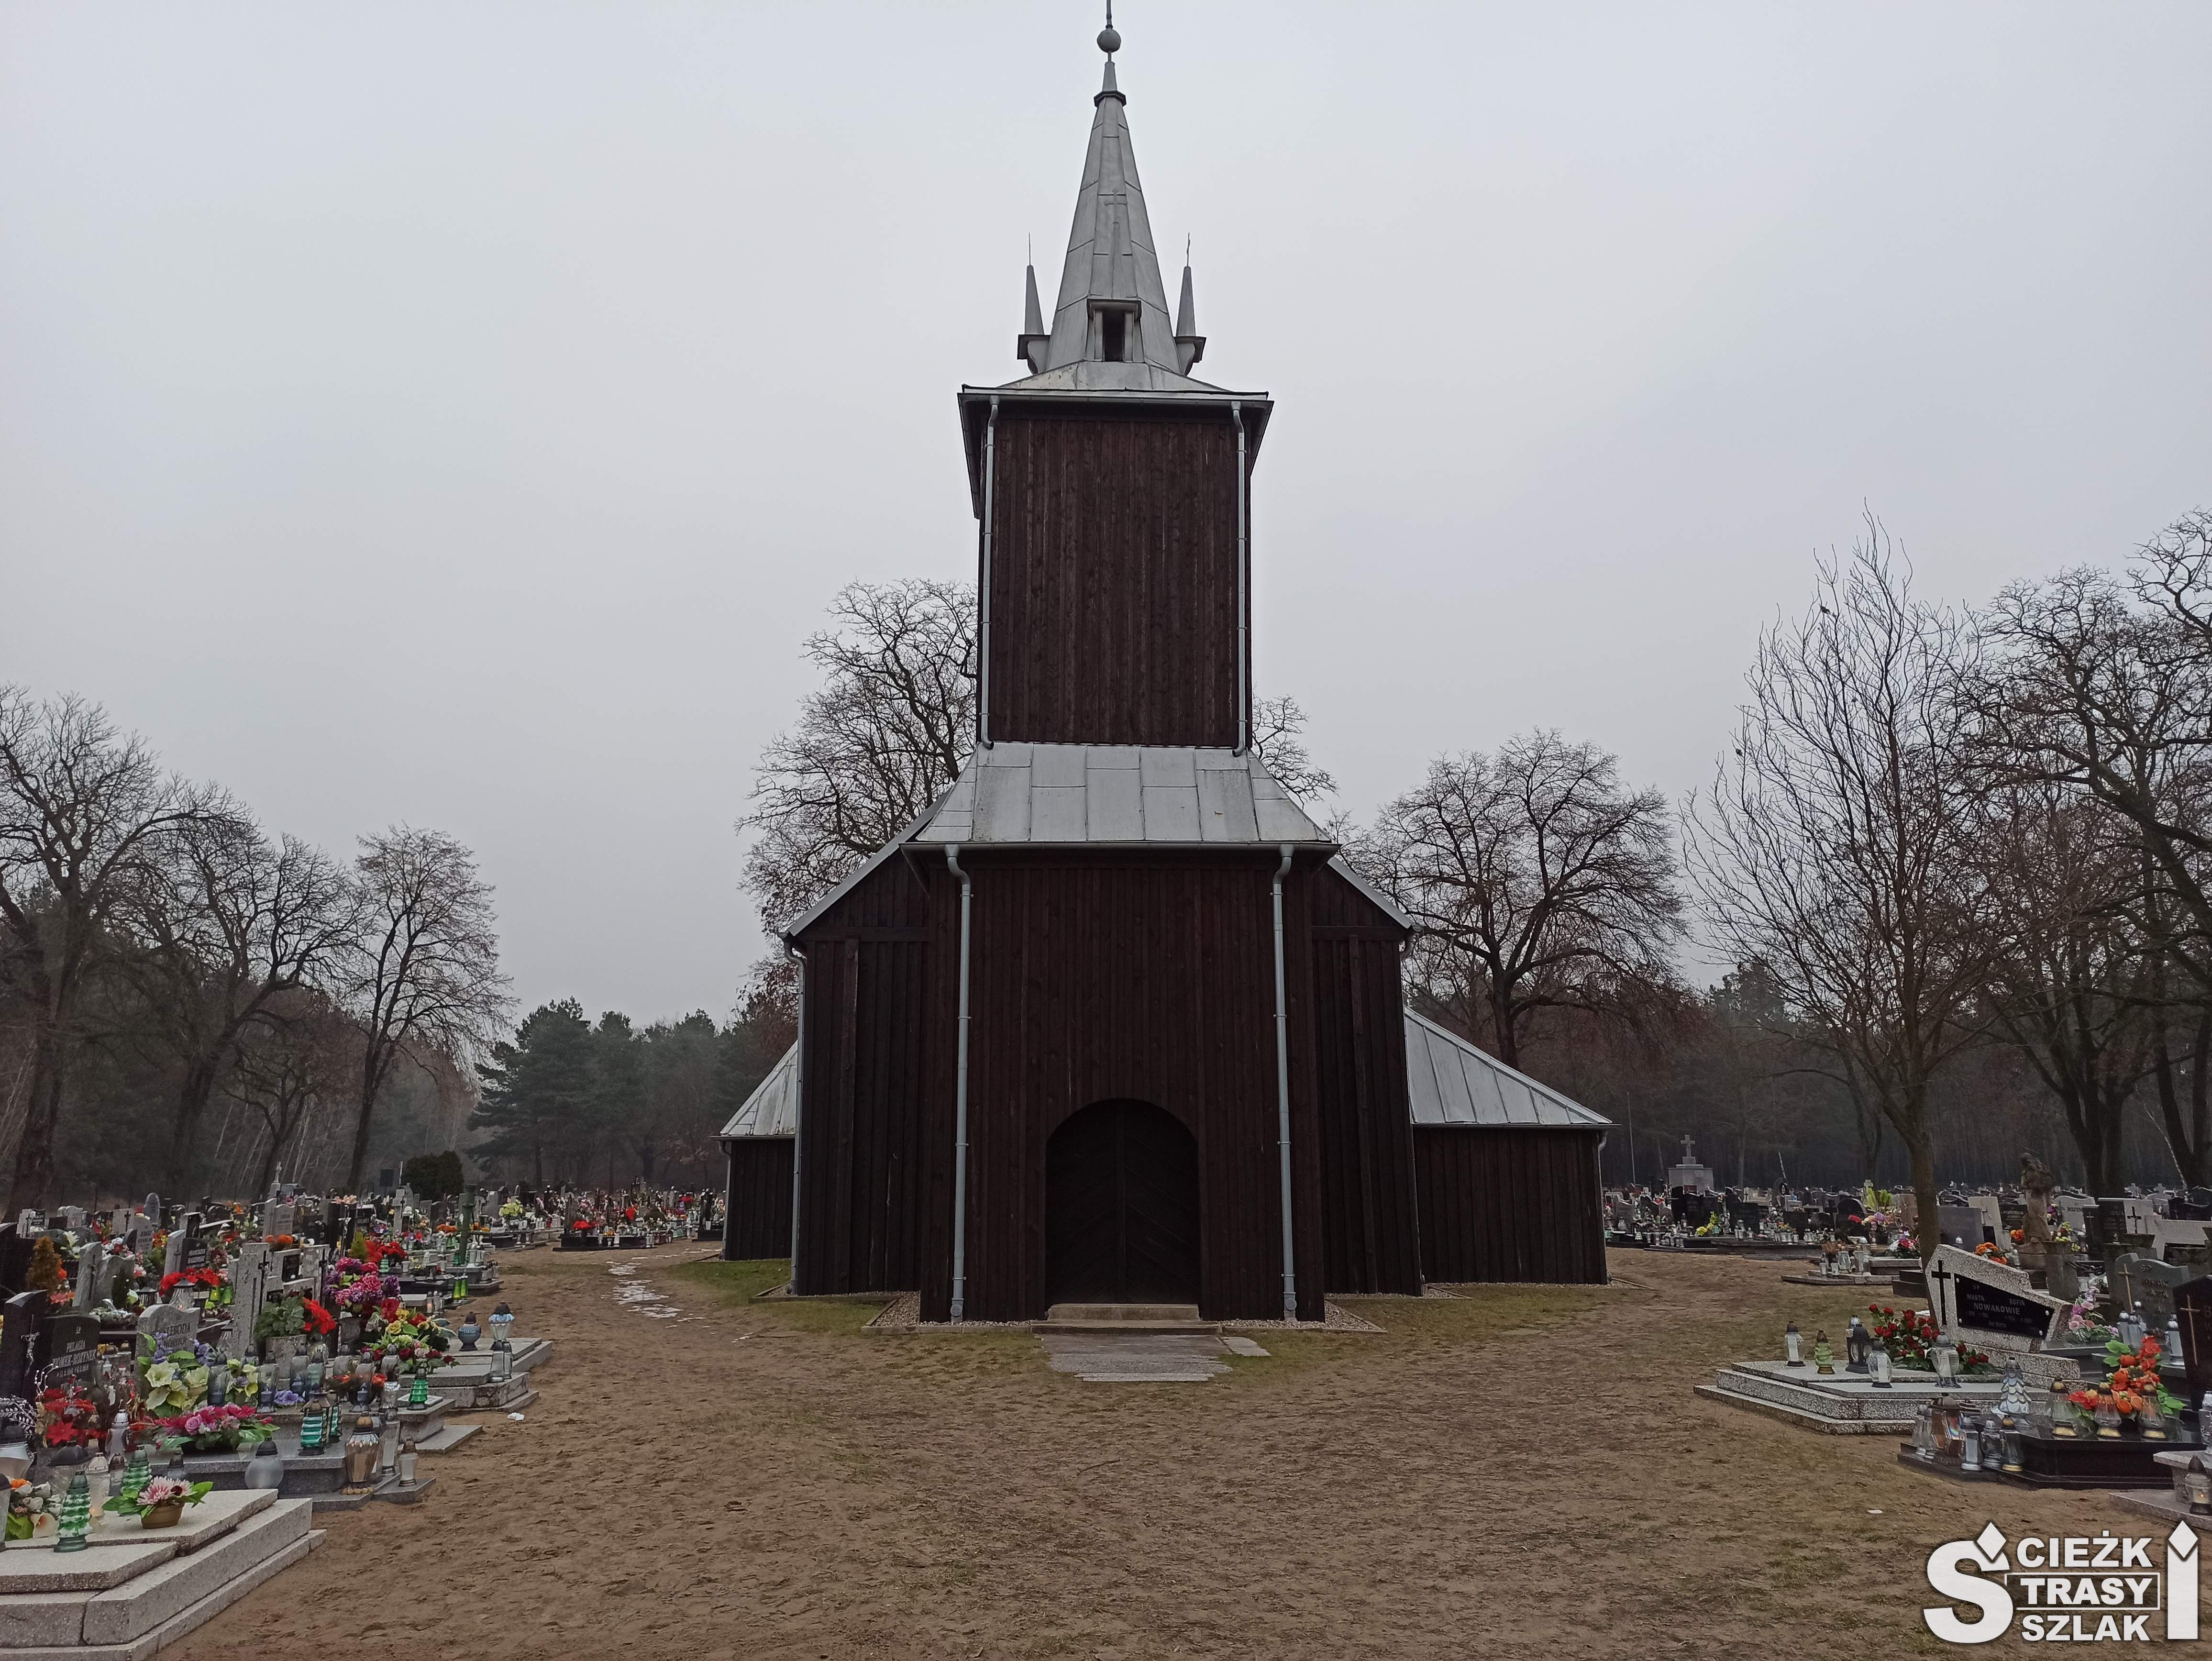 Wejście do drewnianego kościoła w Kębłowie z wysoką wieżą kościelną na cmentarzu